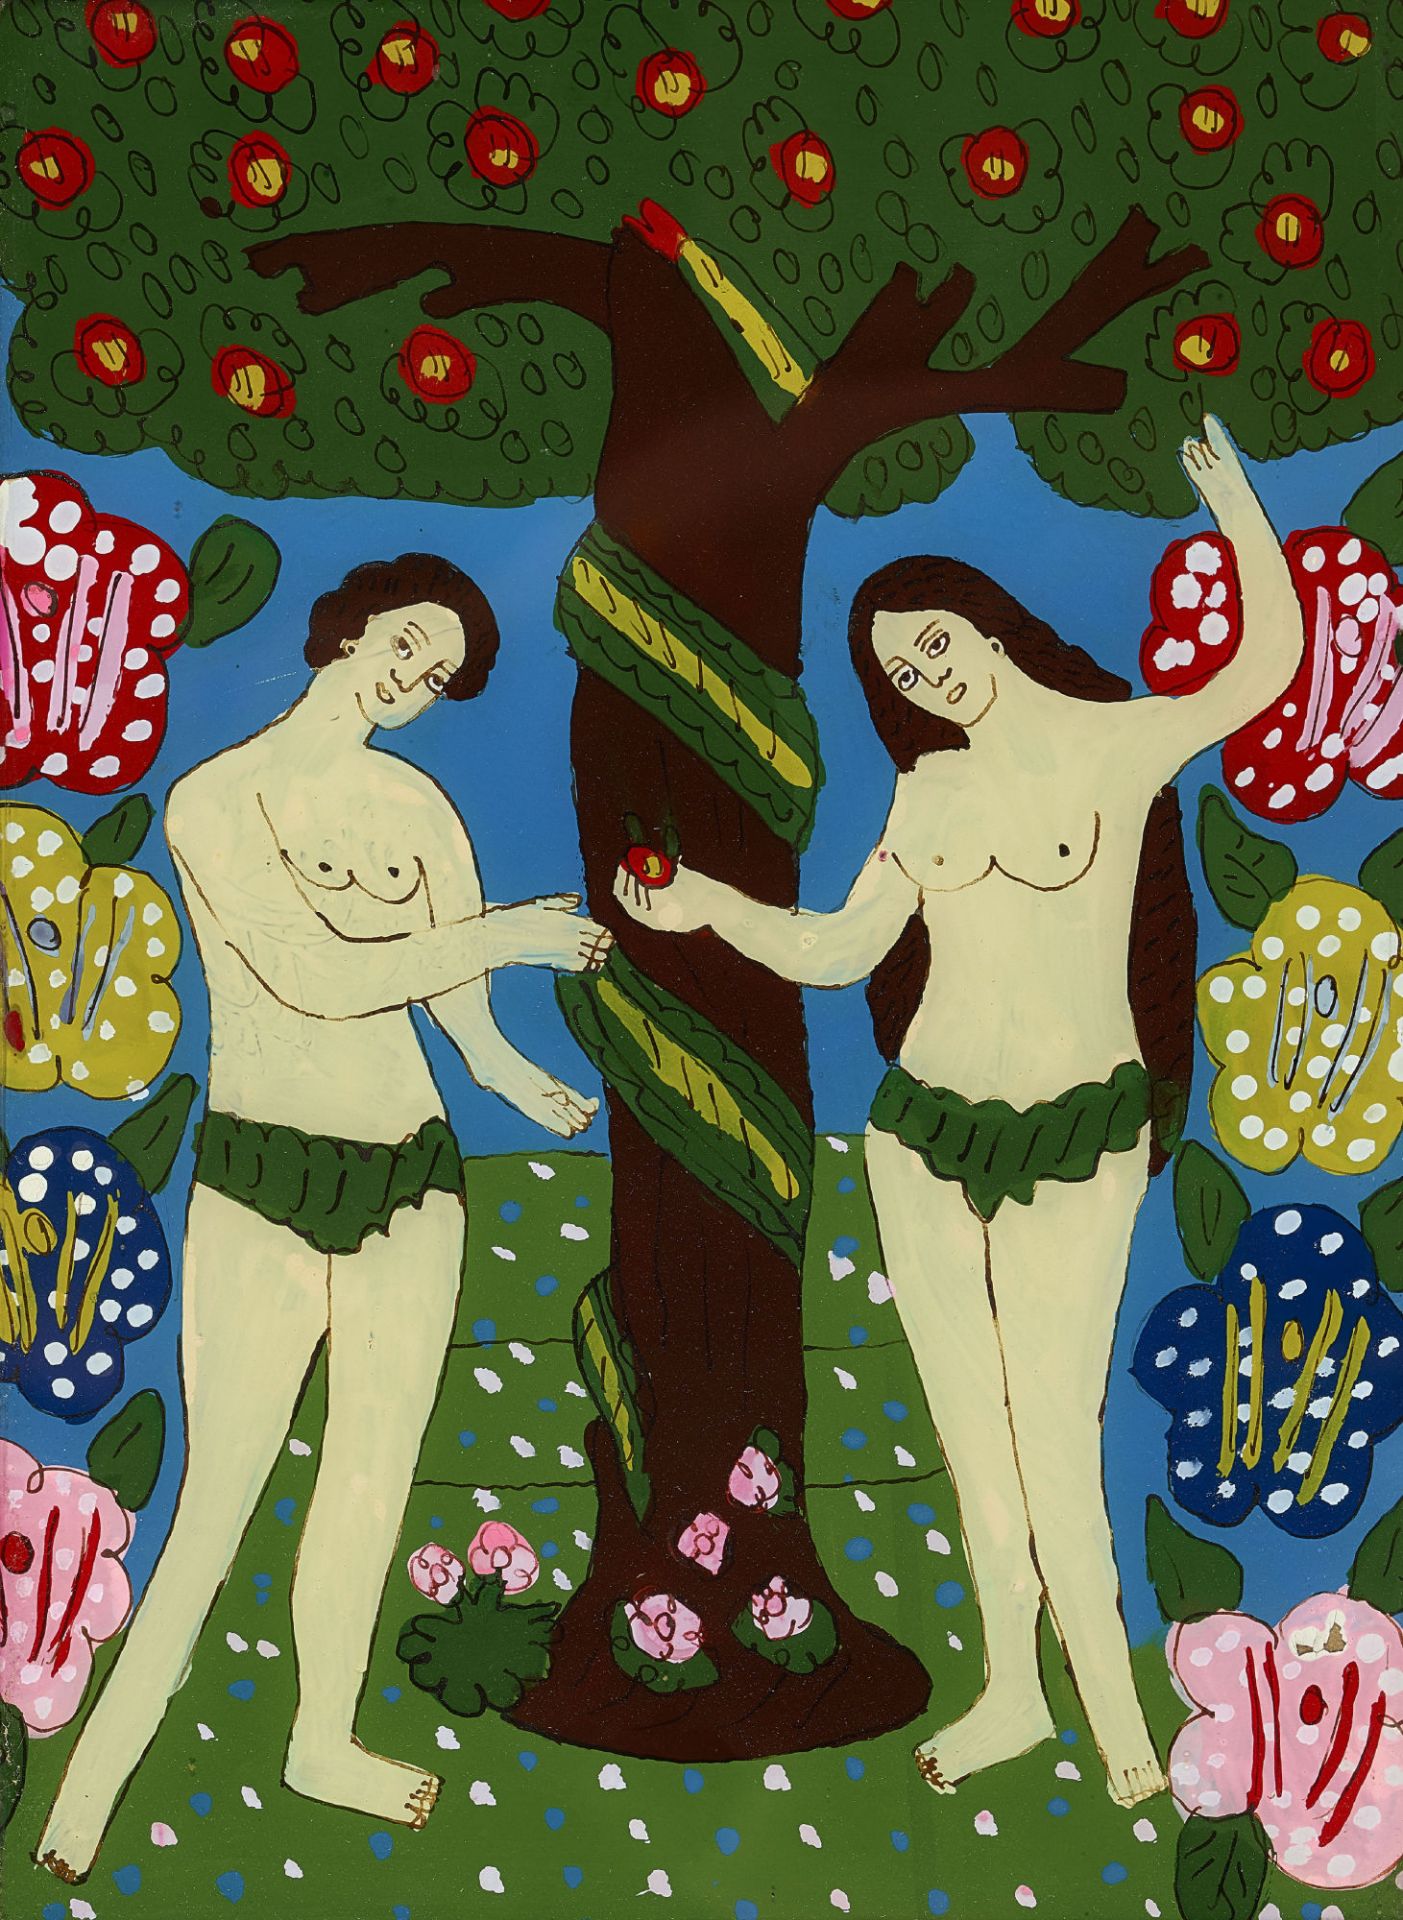 WOHL RUMÄNIEN, 19./20. JH.: Adam und Eva.